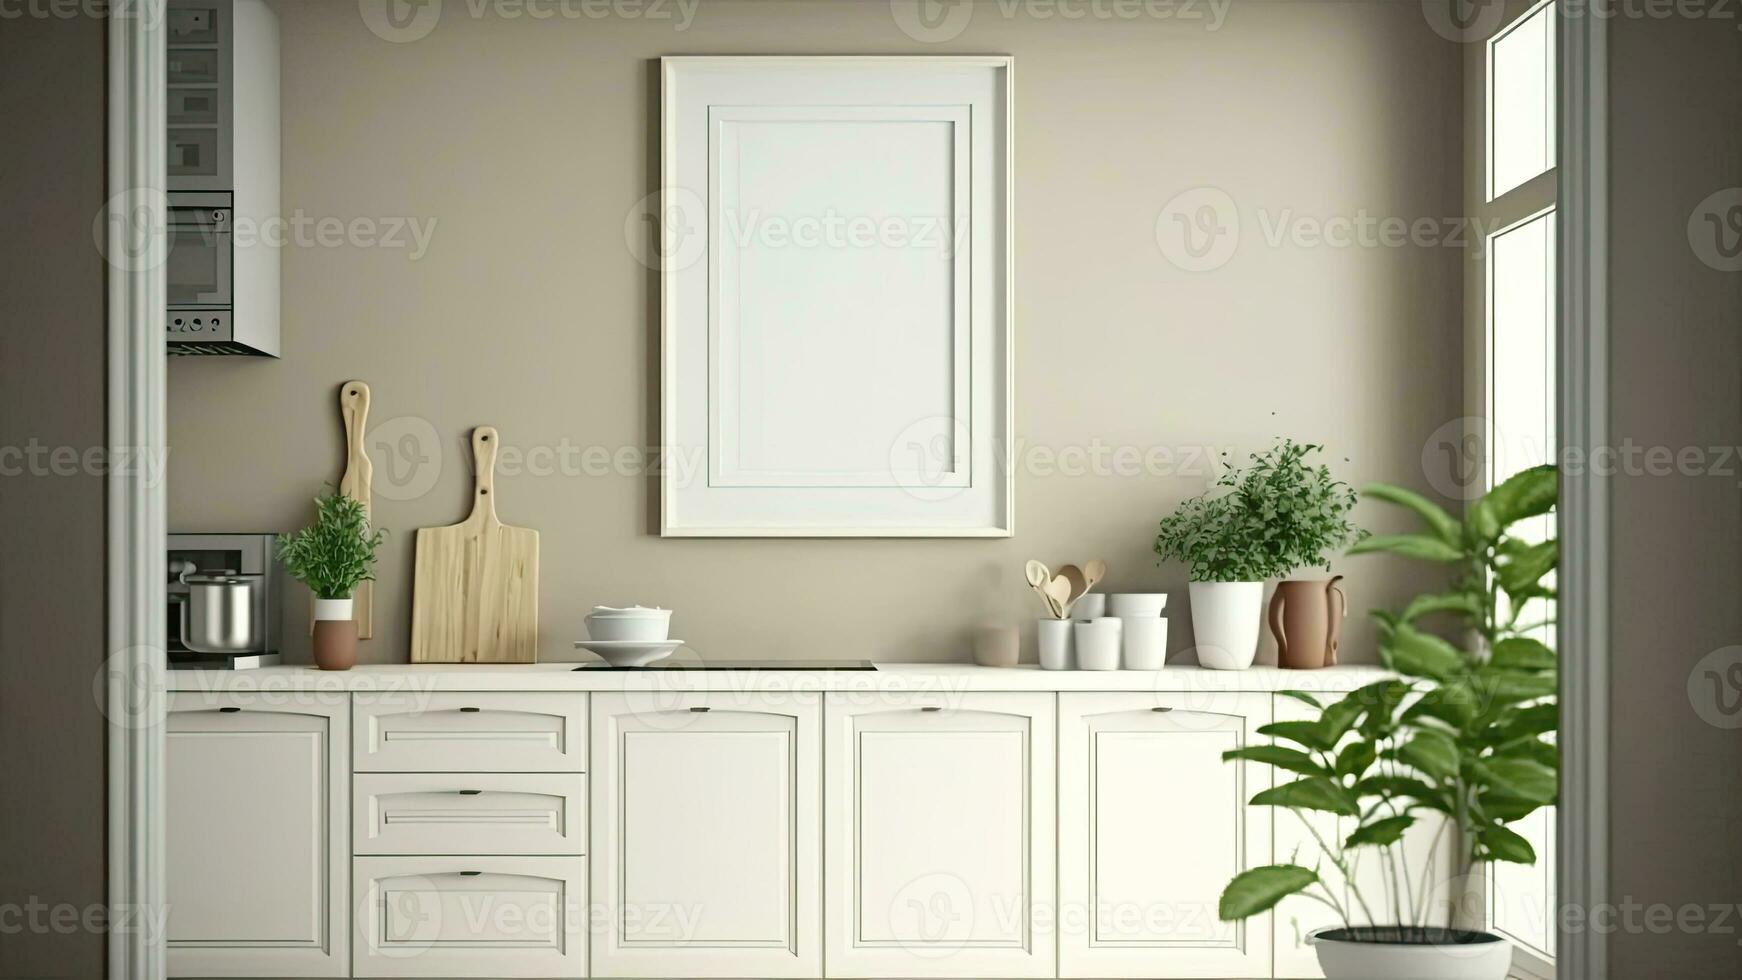 3d composição do minimalista cozinha interior projeto, plantar panelas e em branco quadro, Armação brincar. foto